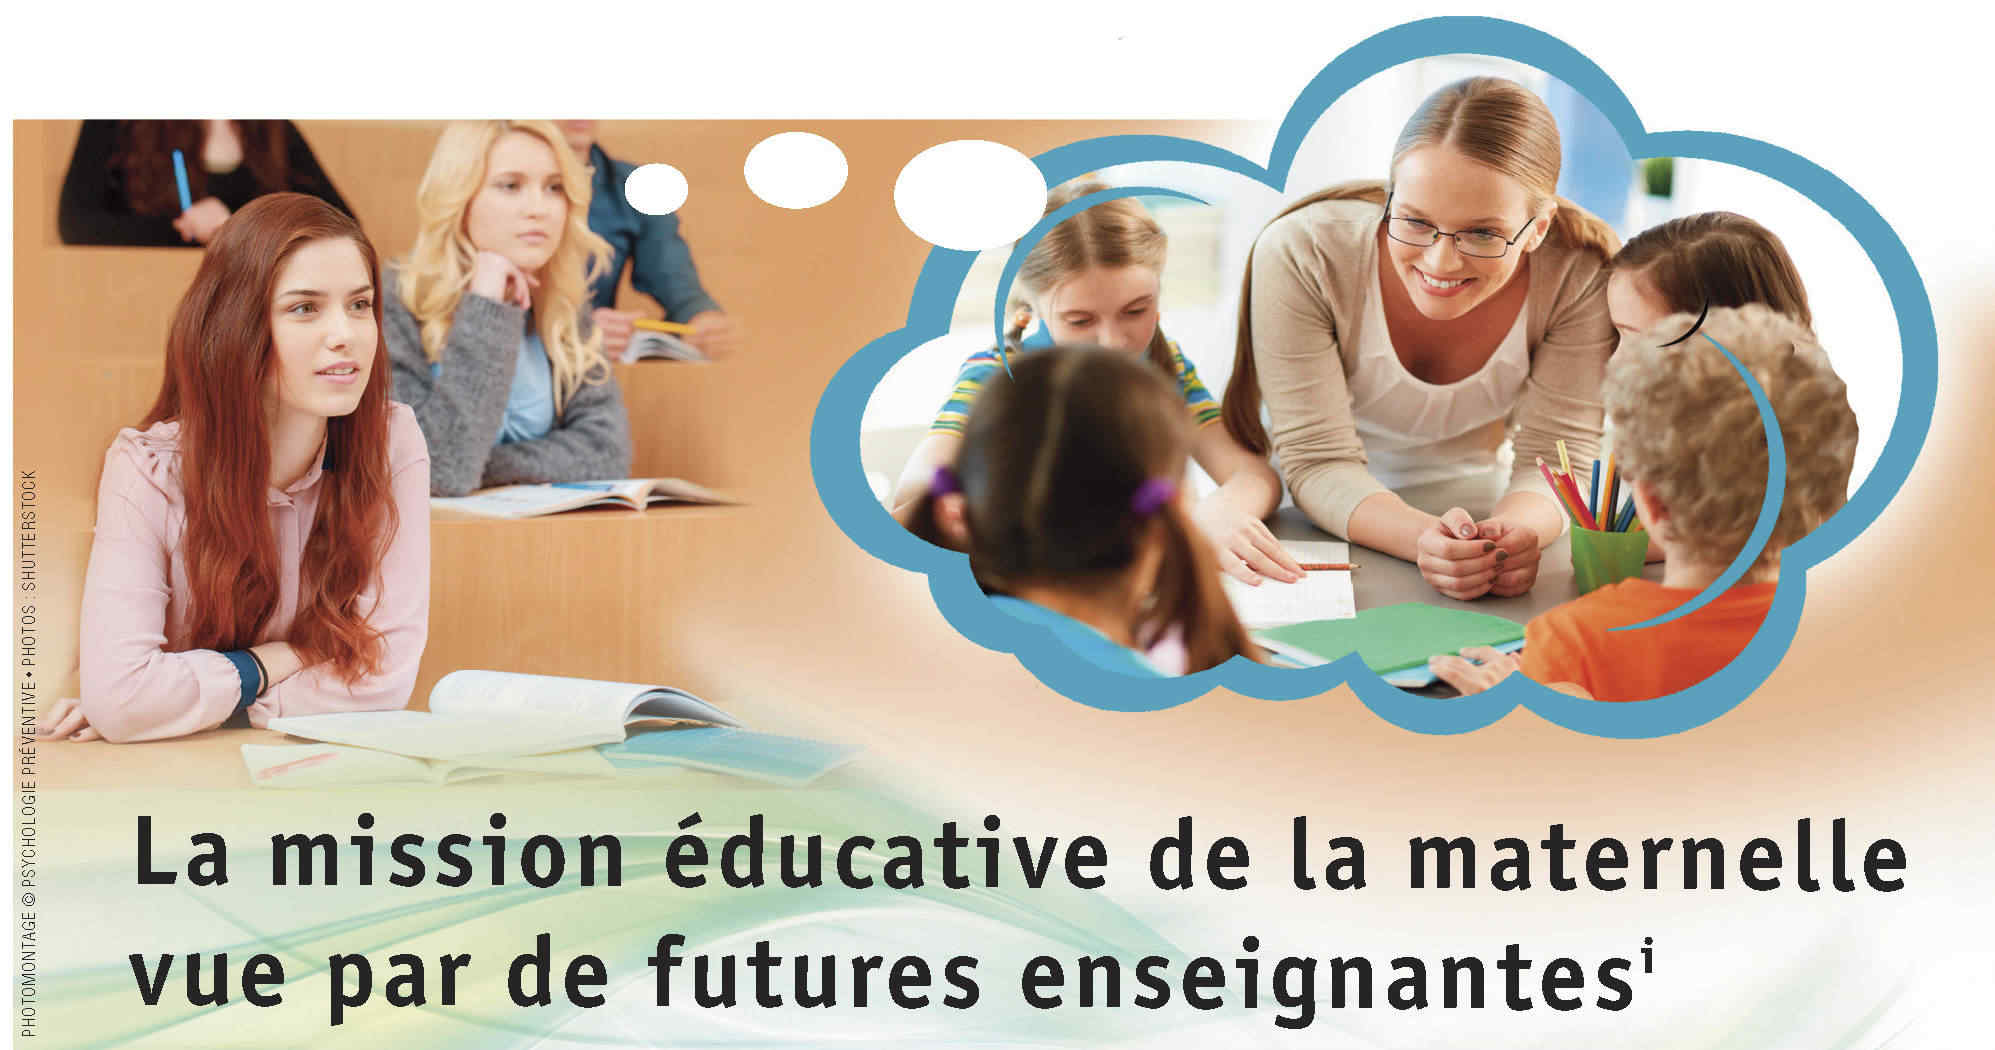 La mission éducative de la maternelle vue par de futures enseignantes - Johanne April, Hélène Larouche et Monica Boudreau